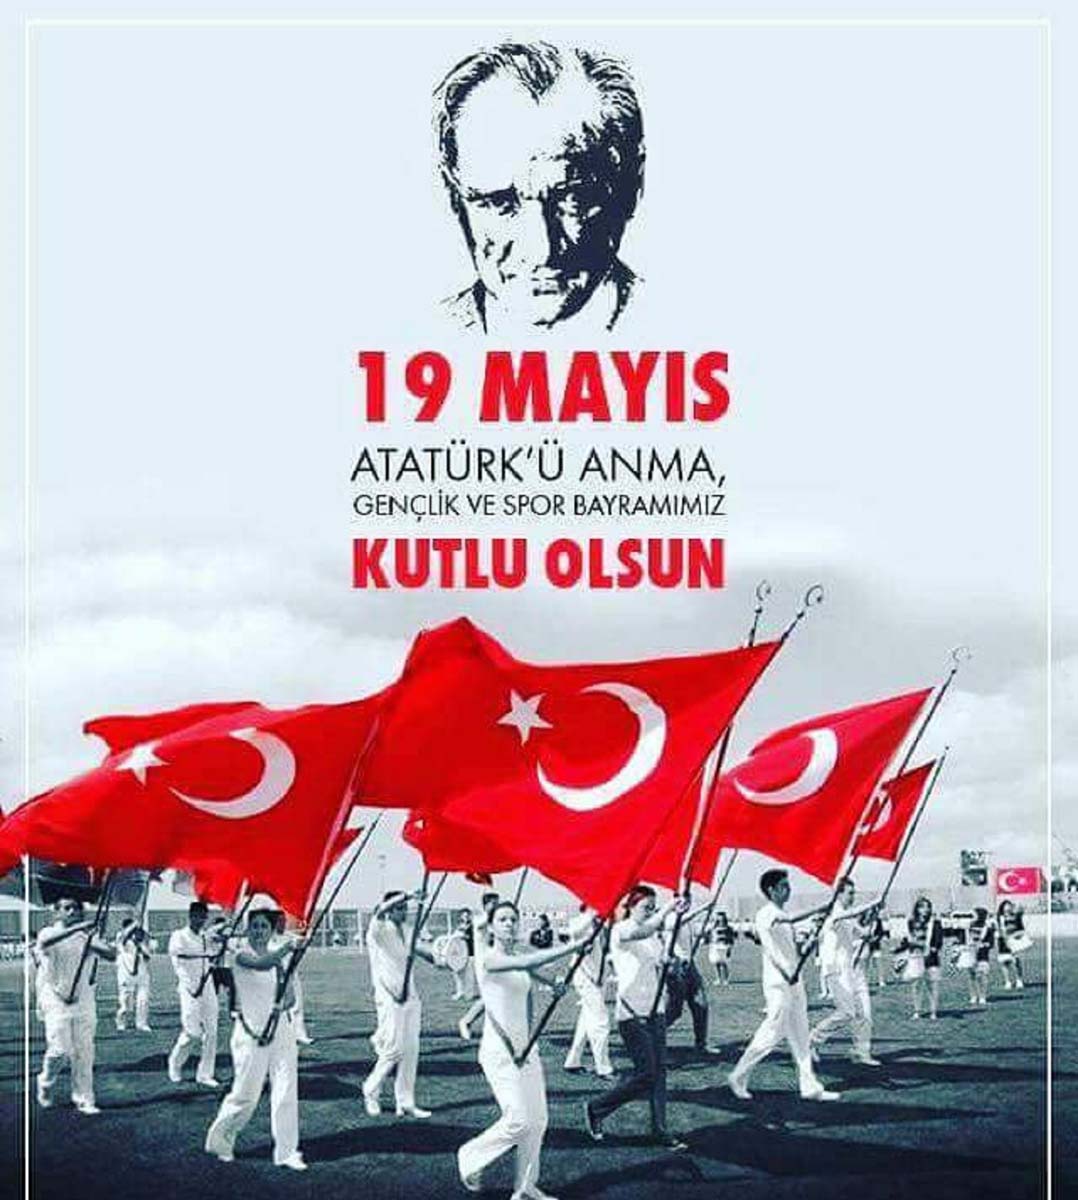 19 Mayıs Atatürk'ü Anma Gençlik ve Spor Bayramı resmi tatil mi 2022? 19 Mayıs hangi güne denk geliyor, yarım gün mü, tam gün mü? 